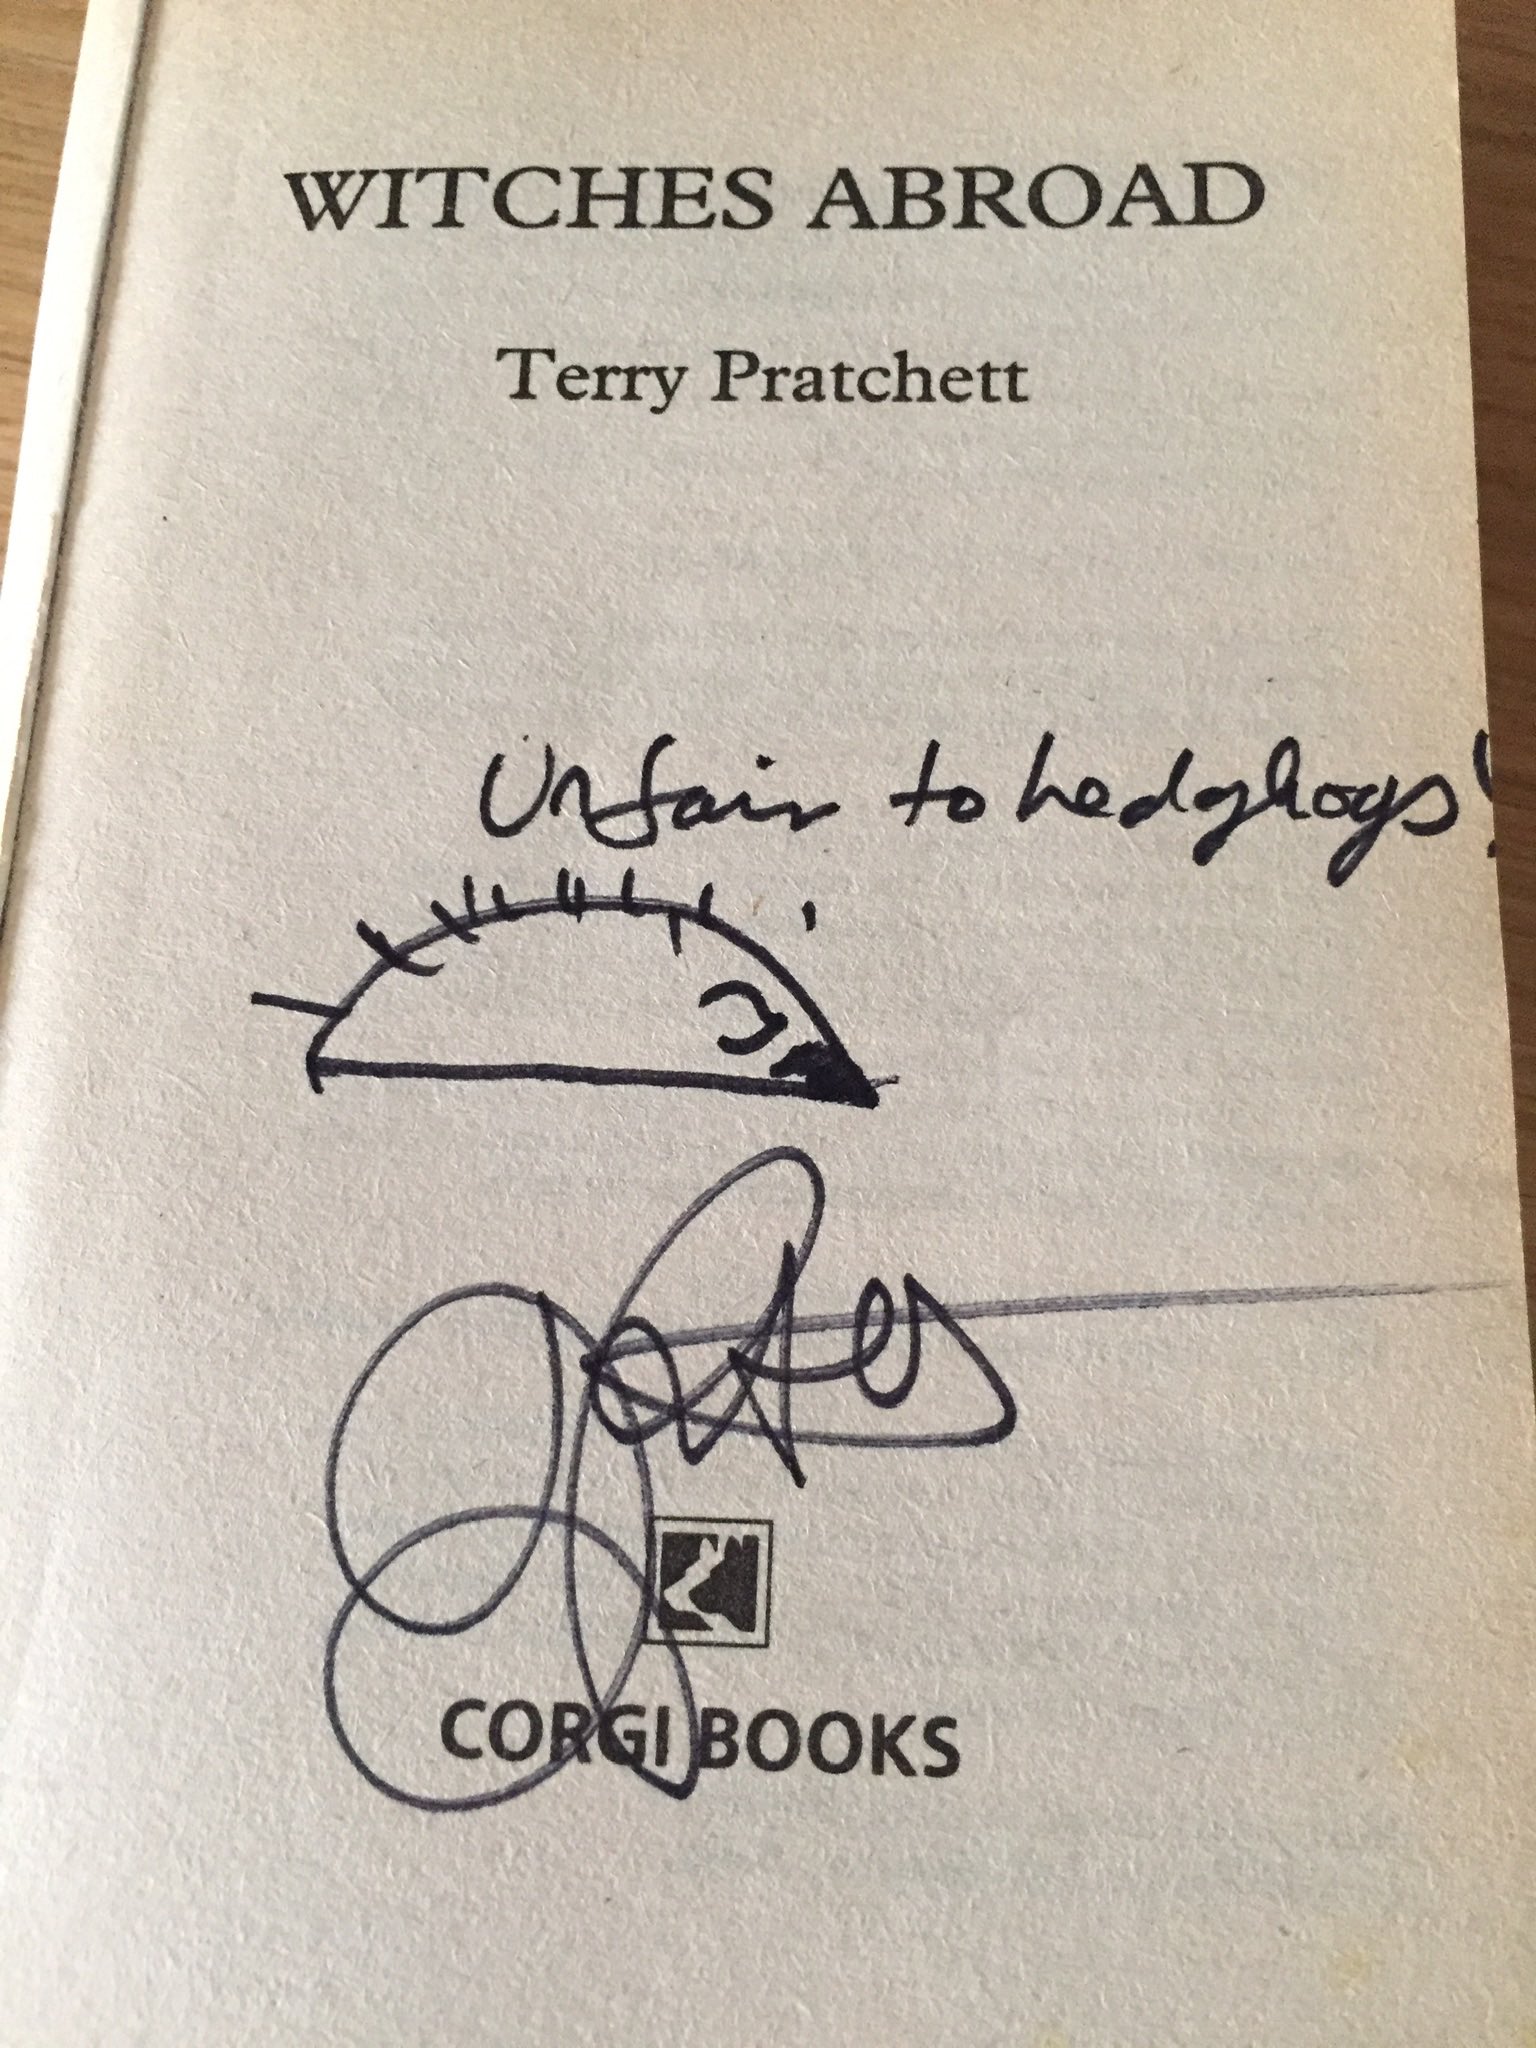   Happy Birthday Terry Pratchett. Fortunate indeed to have seen him talk. 